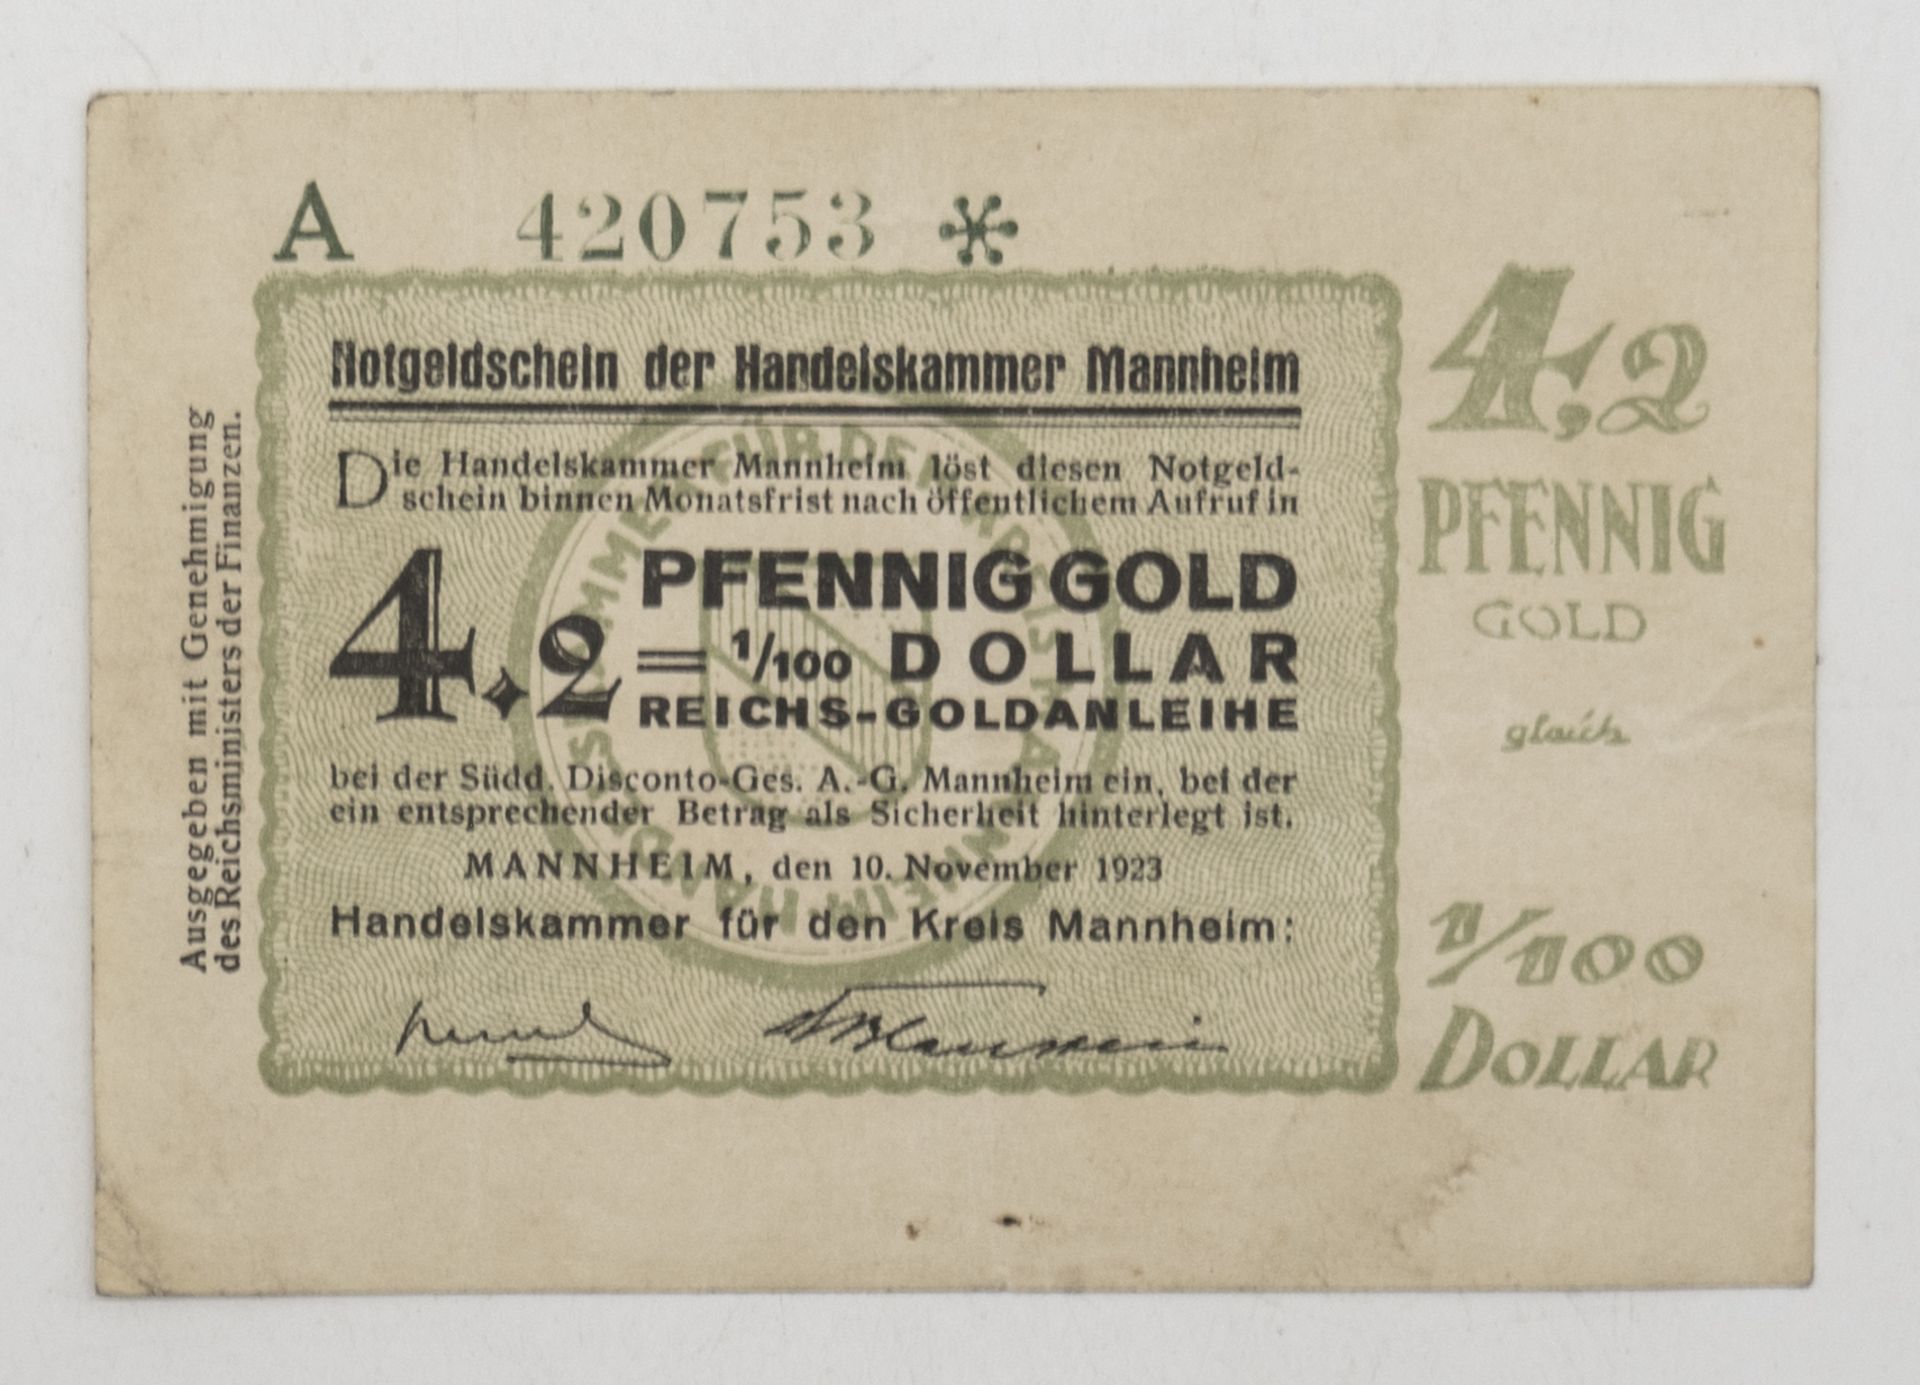 Notgeld der Handelskammer Mannheim, 10. November 1923, 4.2 Pfennig Gold = 1/100 Dollar. Erhaltung: